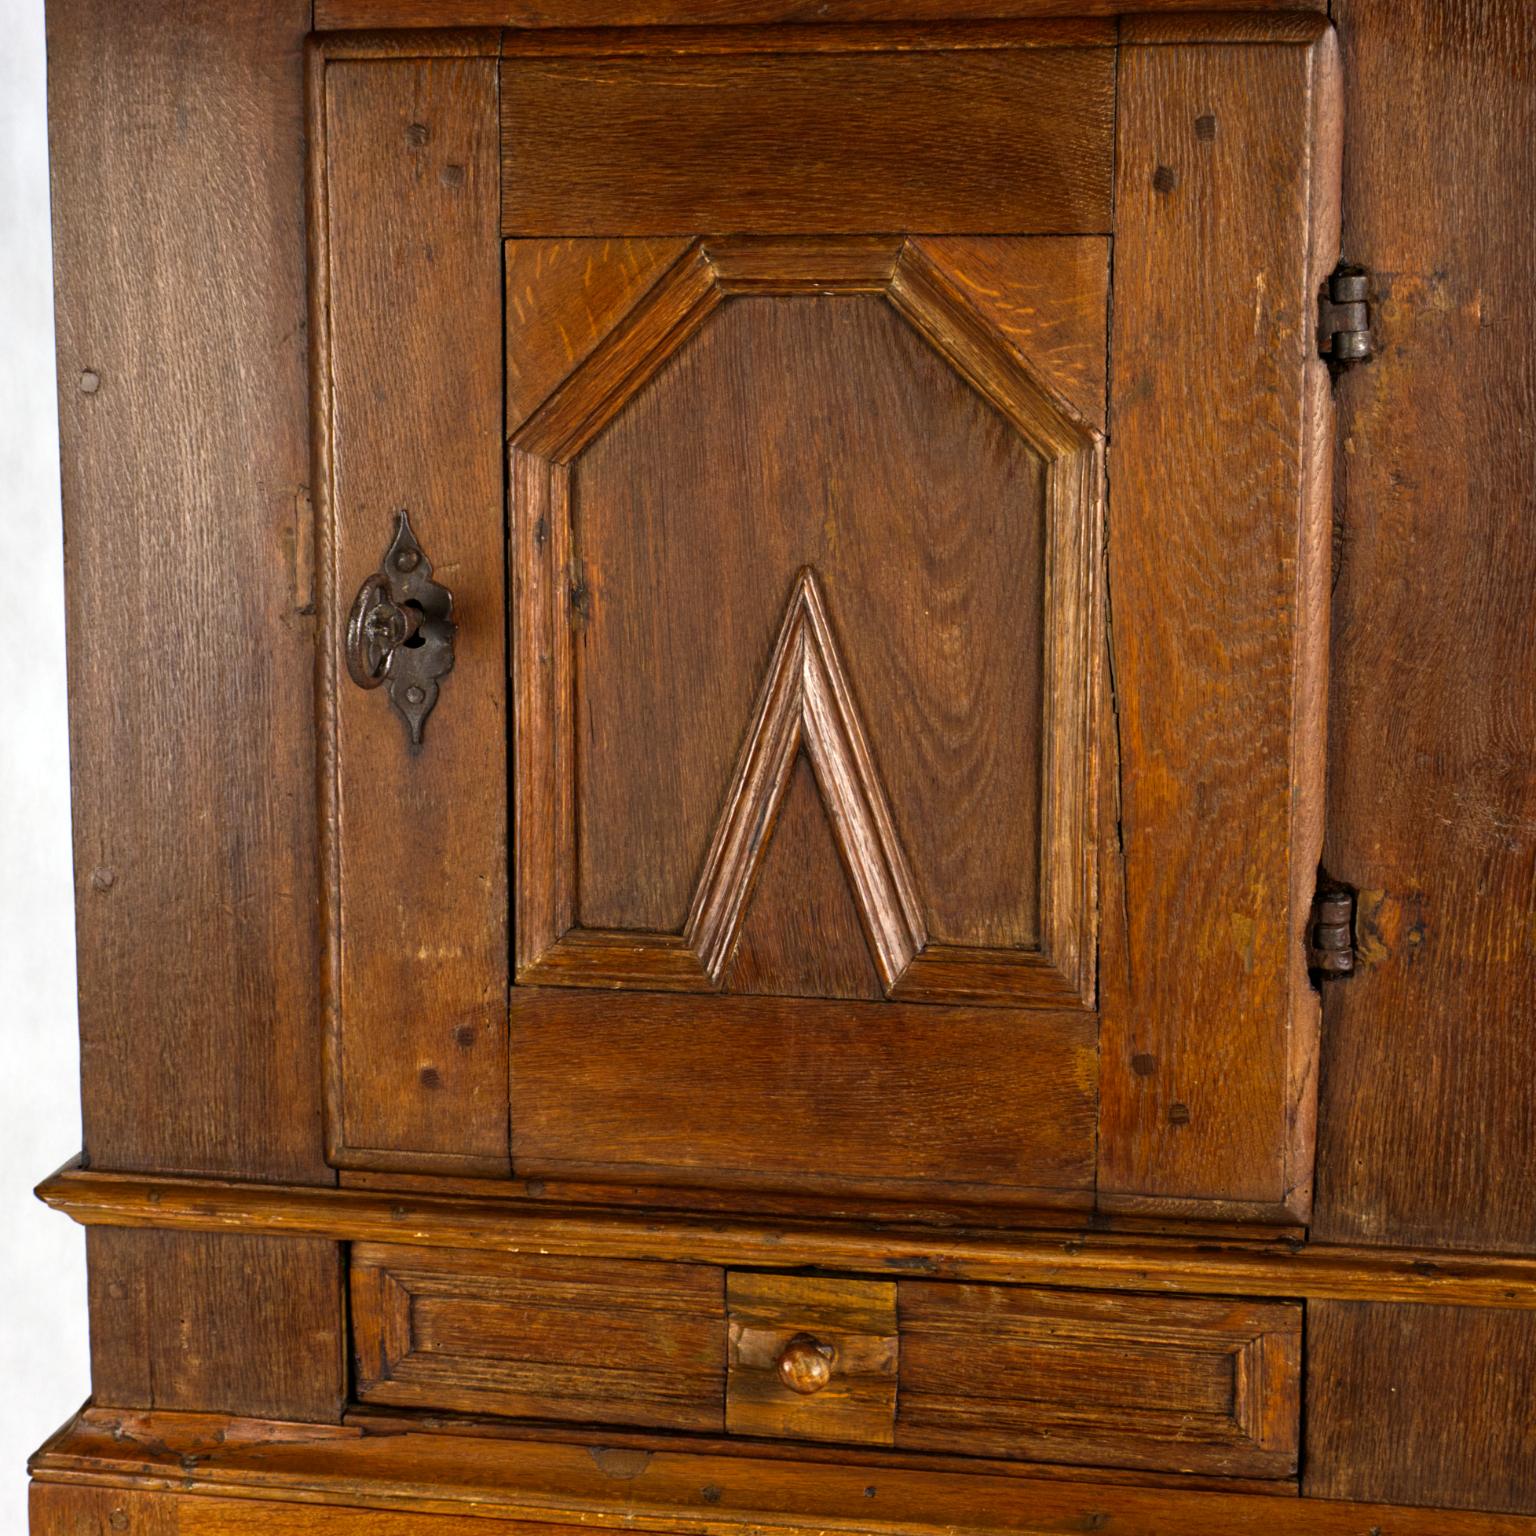 Cette étonnante armoire baroque danoise en chêne a été fabriquée au début du 18e siècle. Dans le passé, le tiroir inférieur a apparemment été réparé par un sculpteur populaire. L'armoire est équipée d'une serrure originale et toujours fonctionnelle